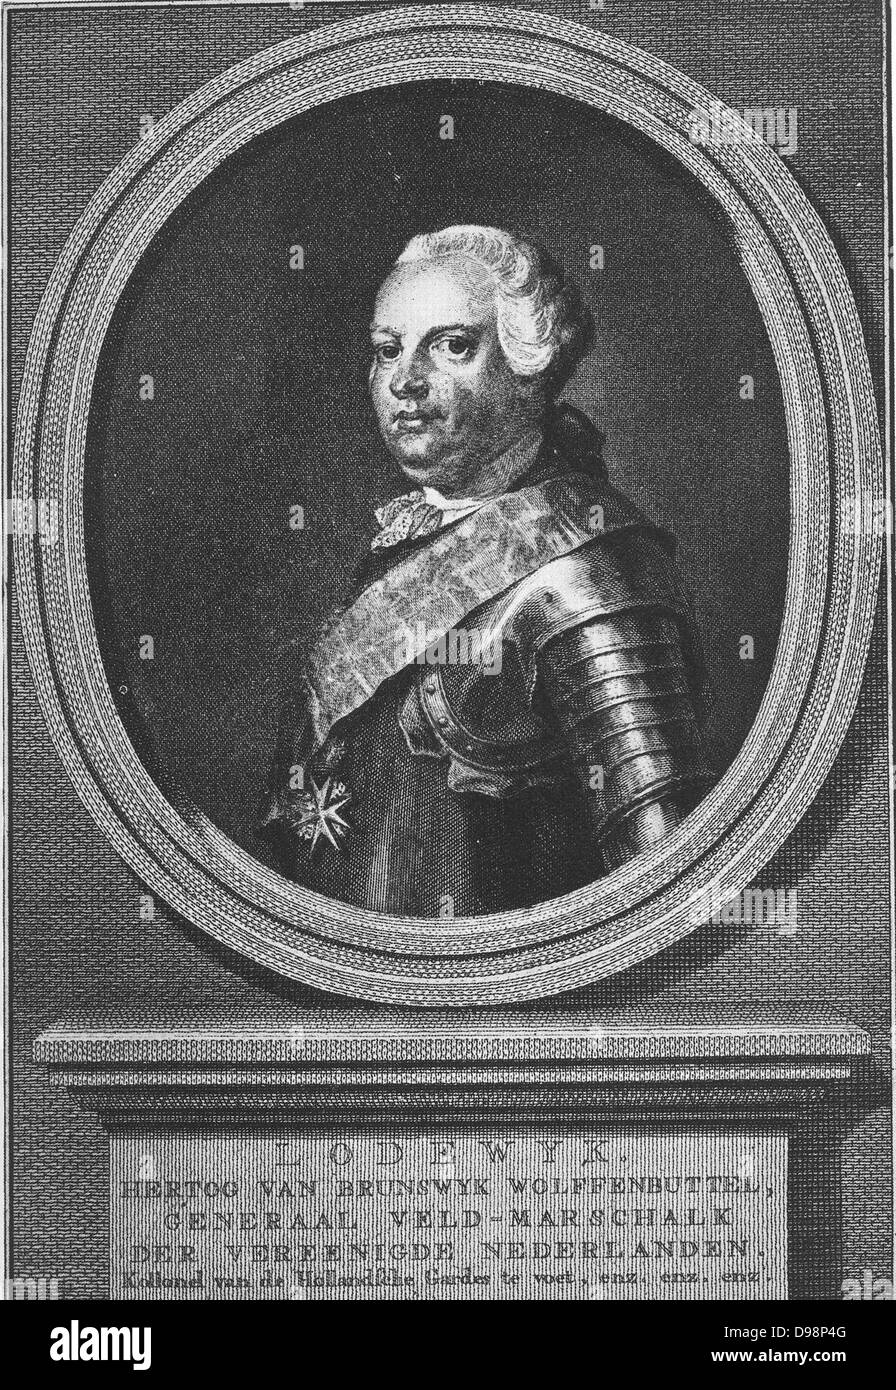 Louis Ernest von Braunschweig-Lüneburg-Bevern (25. September 1718, Wolfenbüttel - 12. Mai 1788, Eisenach) war ein Feld - Marschall in den Armeen des Heiligen Römischen Reiches und der niederländischen Republik. Ab 13. November 1750 bis 1766 war er der Generalkapitän der Niederlande, wo er als der Herzog von Braunschweig oder (um ihn von seinem ältesten Bruder Charles, der Titel ihres Vaters der Herzog von Braunschweig-lüneburg war erfolgreich) Herzog von Braunschweig-wolfenbüttel zu unterscheiden bekannt war. Ein weiterer Bruder war Herzog Ferdinand von Braunschweig, der die Alliierten Anglo-German Armee führte während des Siebenjährigen Krieges. Stockfoto